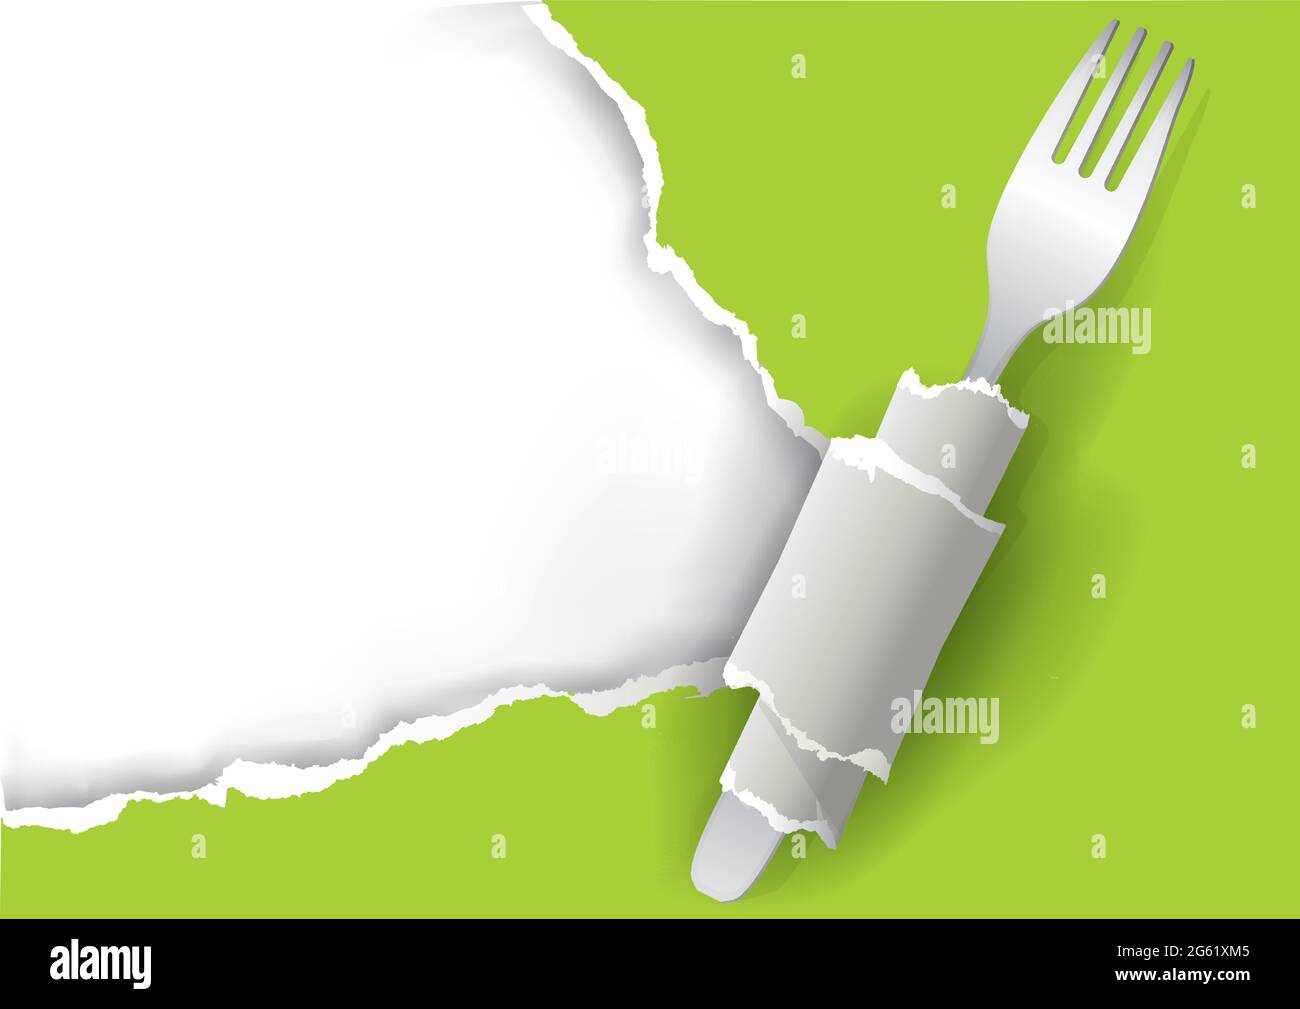 Restaurant végétarien fond de menu, papier déchiré. Illustration de papier déchiré vert avec fourchette. Place pour notre texte ou image. Vecteur disponible. Illustration de Vecteur